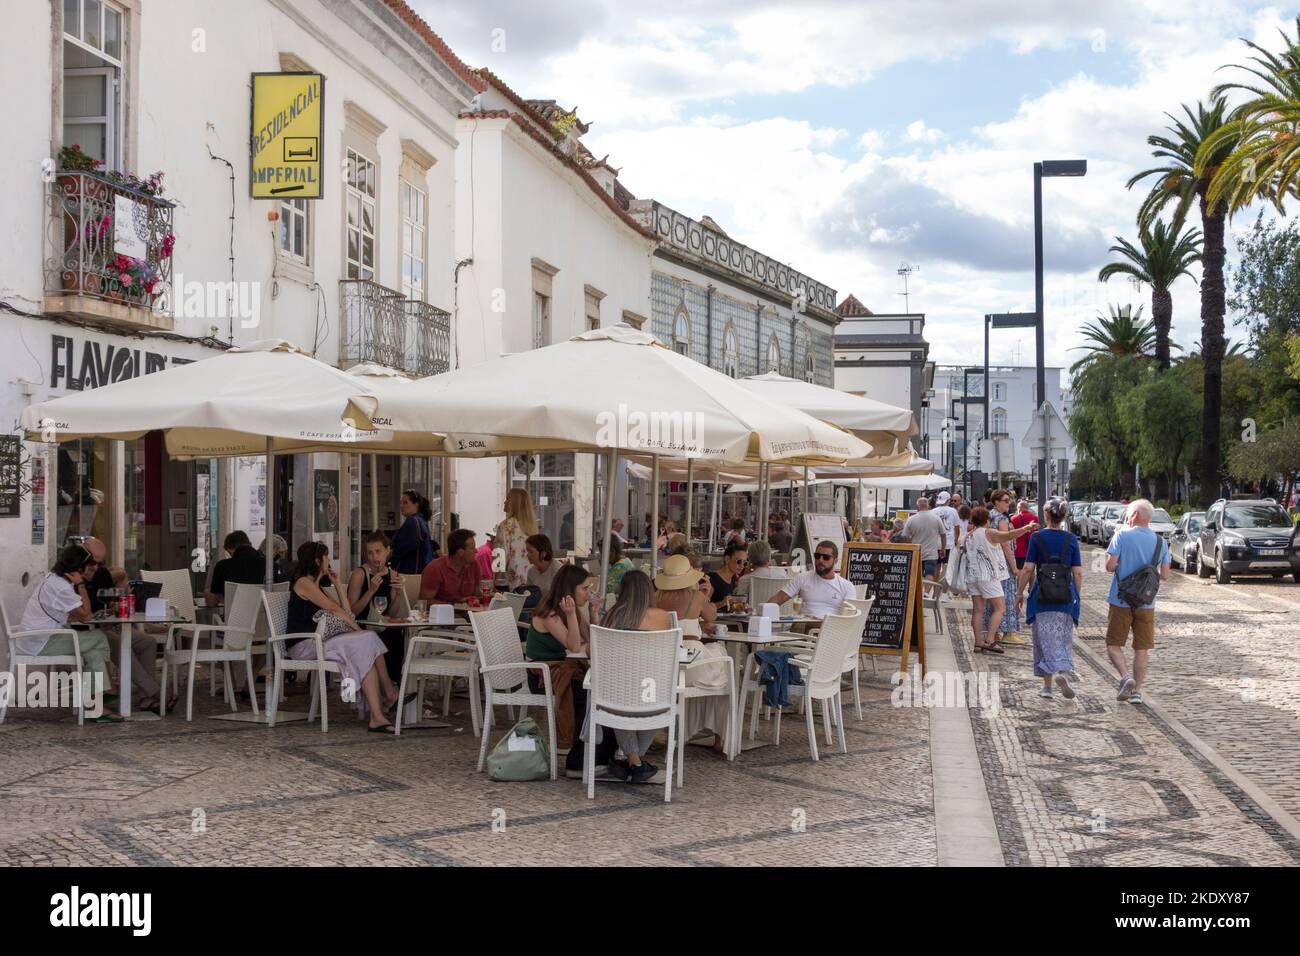 Pavement café, Tavira, Algarve, Portugal, Europe Banque D'Images